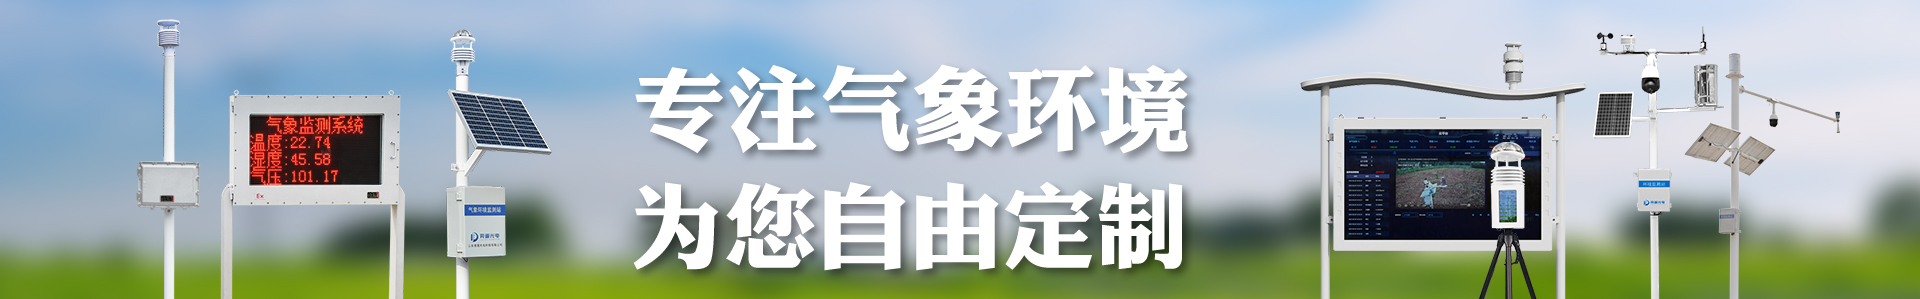 便携式气象站-便携式气象站屏幕款-自动气象站-小型气象站-防爆气象站-光伏气象站-南宫NG·28(中国)官方网站